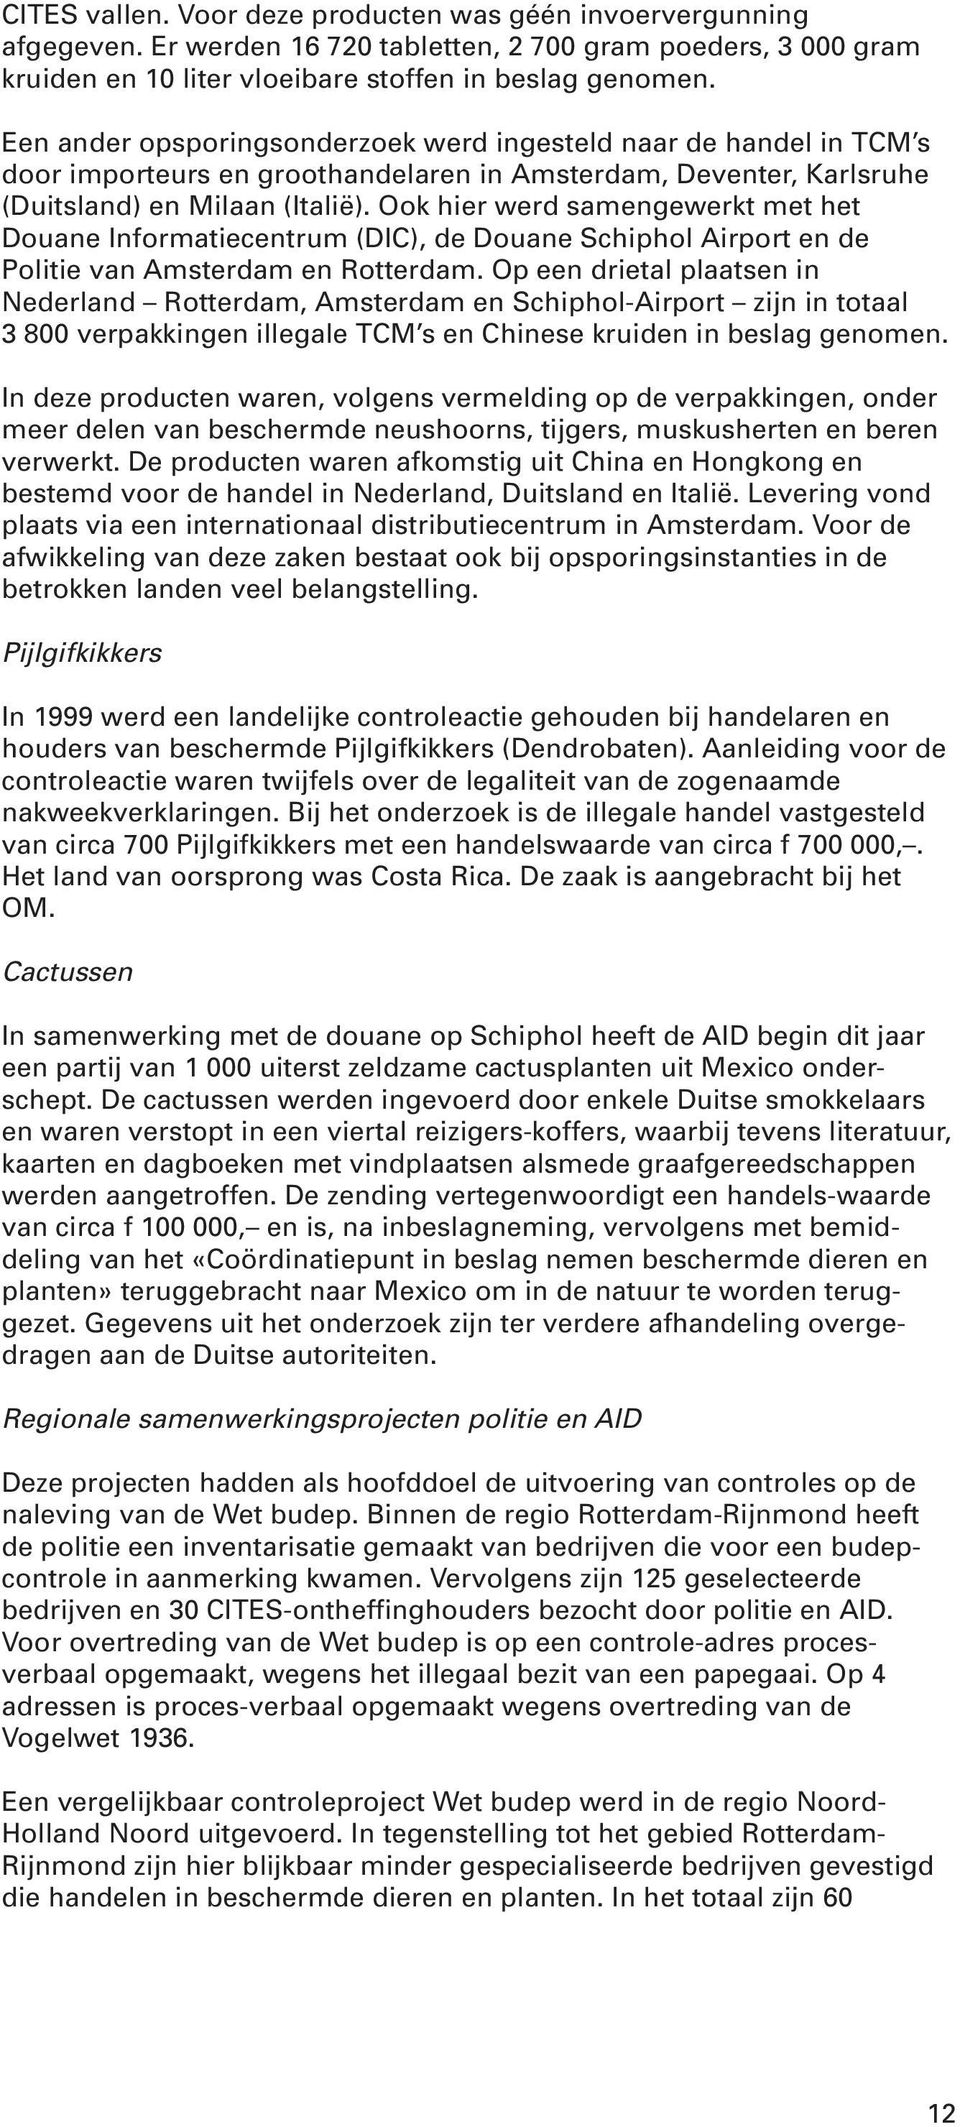 Ook hier werd samengewerkt met het Douane Informatiecentrum (DIC), de Douane Schiphol Airport en de Politie van Amsterdam en Rotterdam.